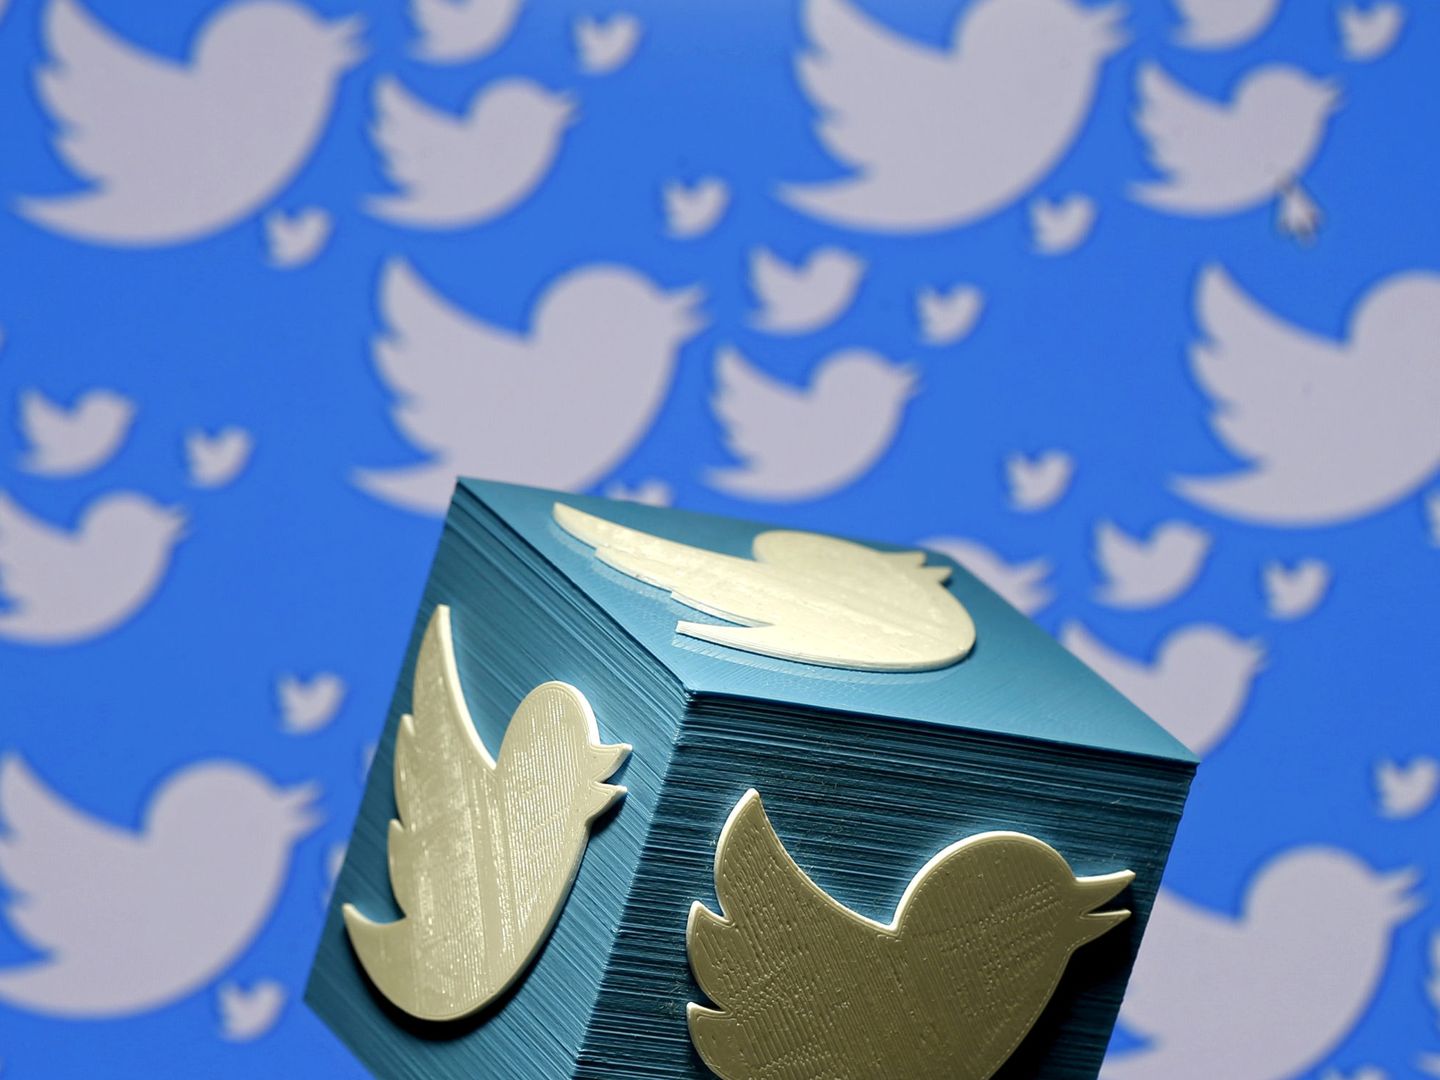 Logo de Twitter impreso en 3D. (Reuters)